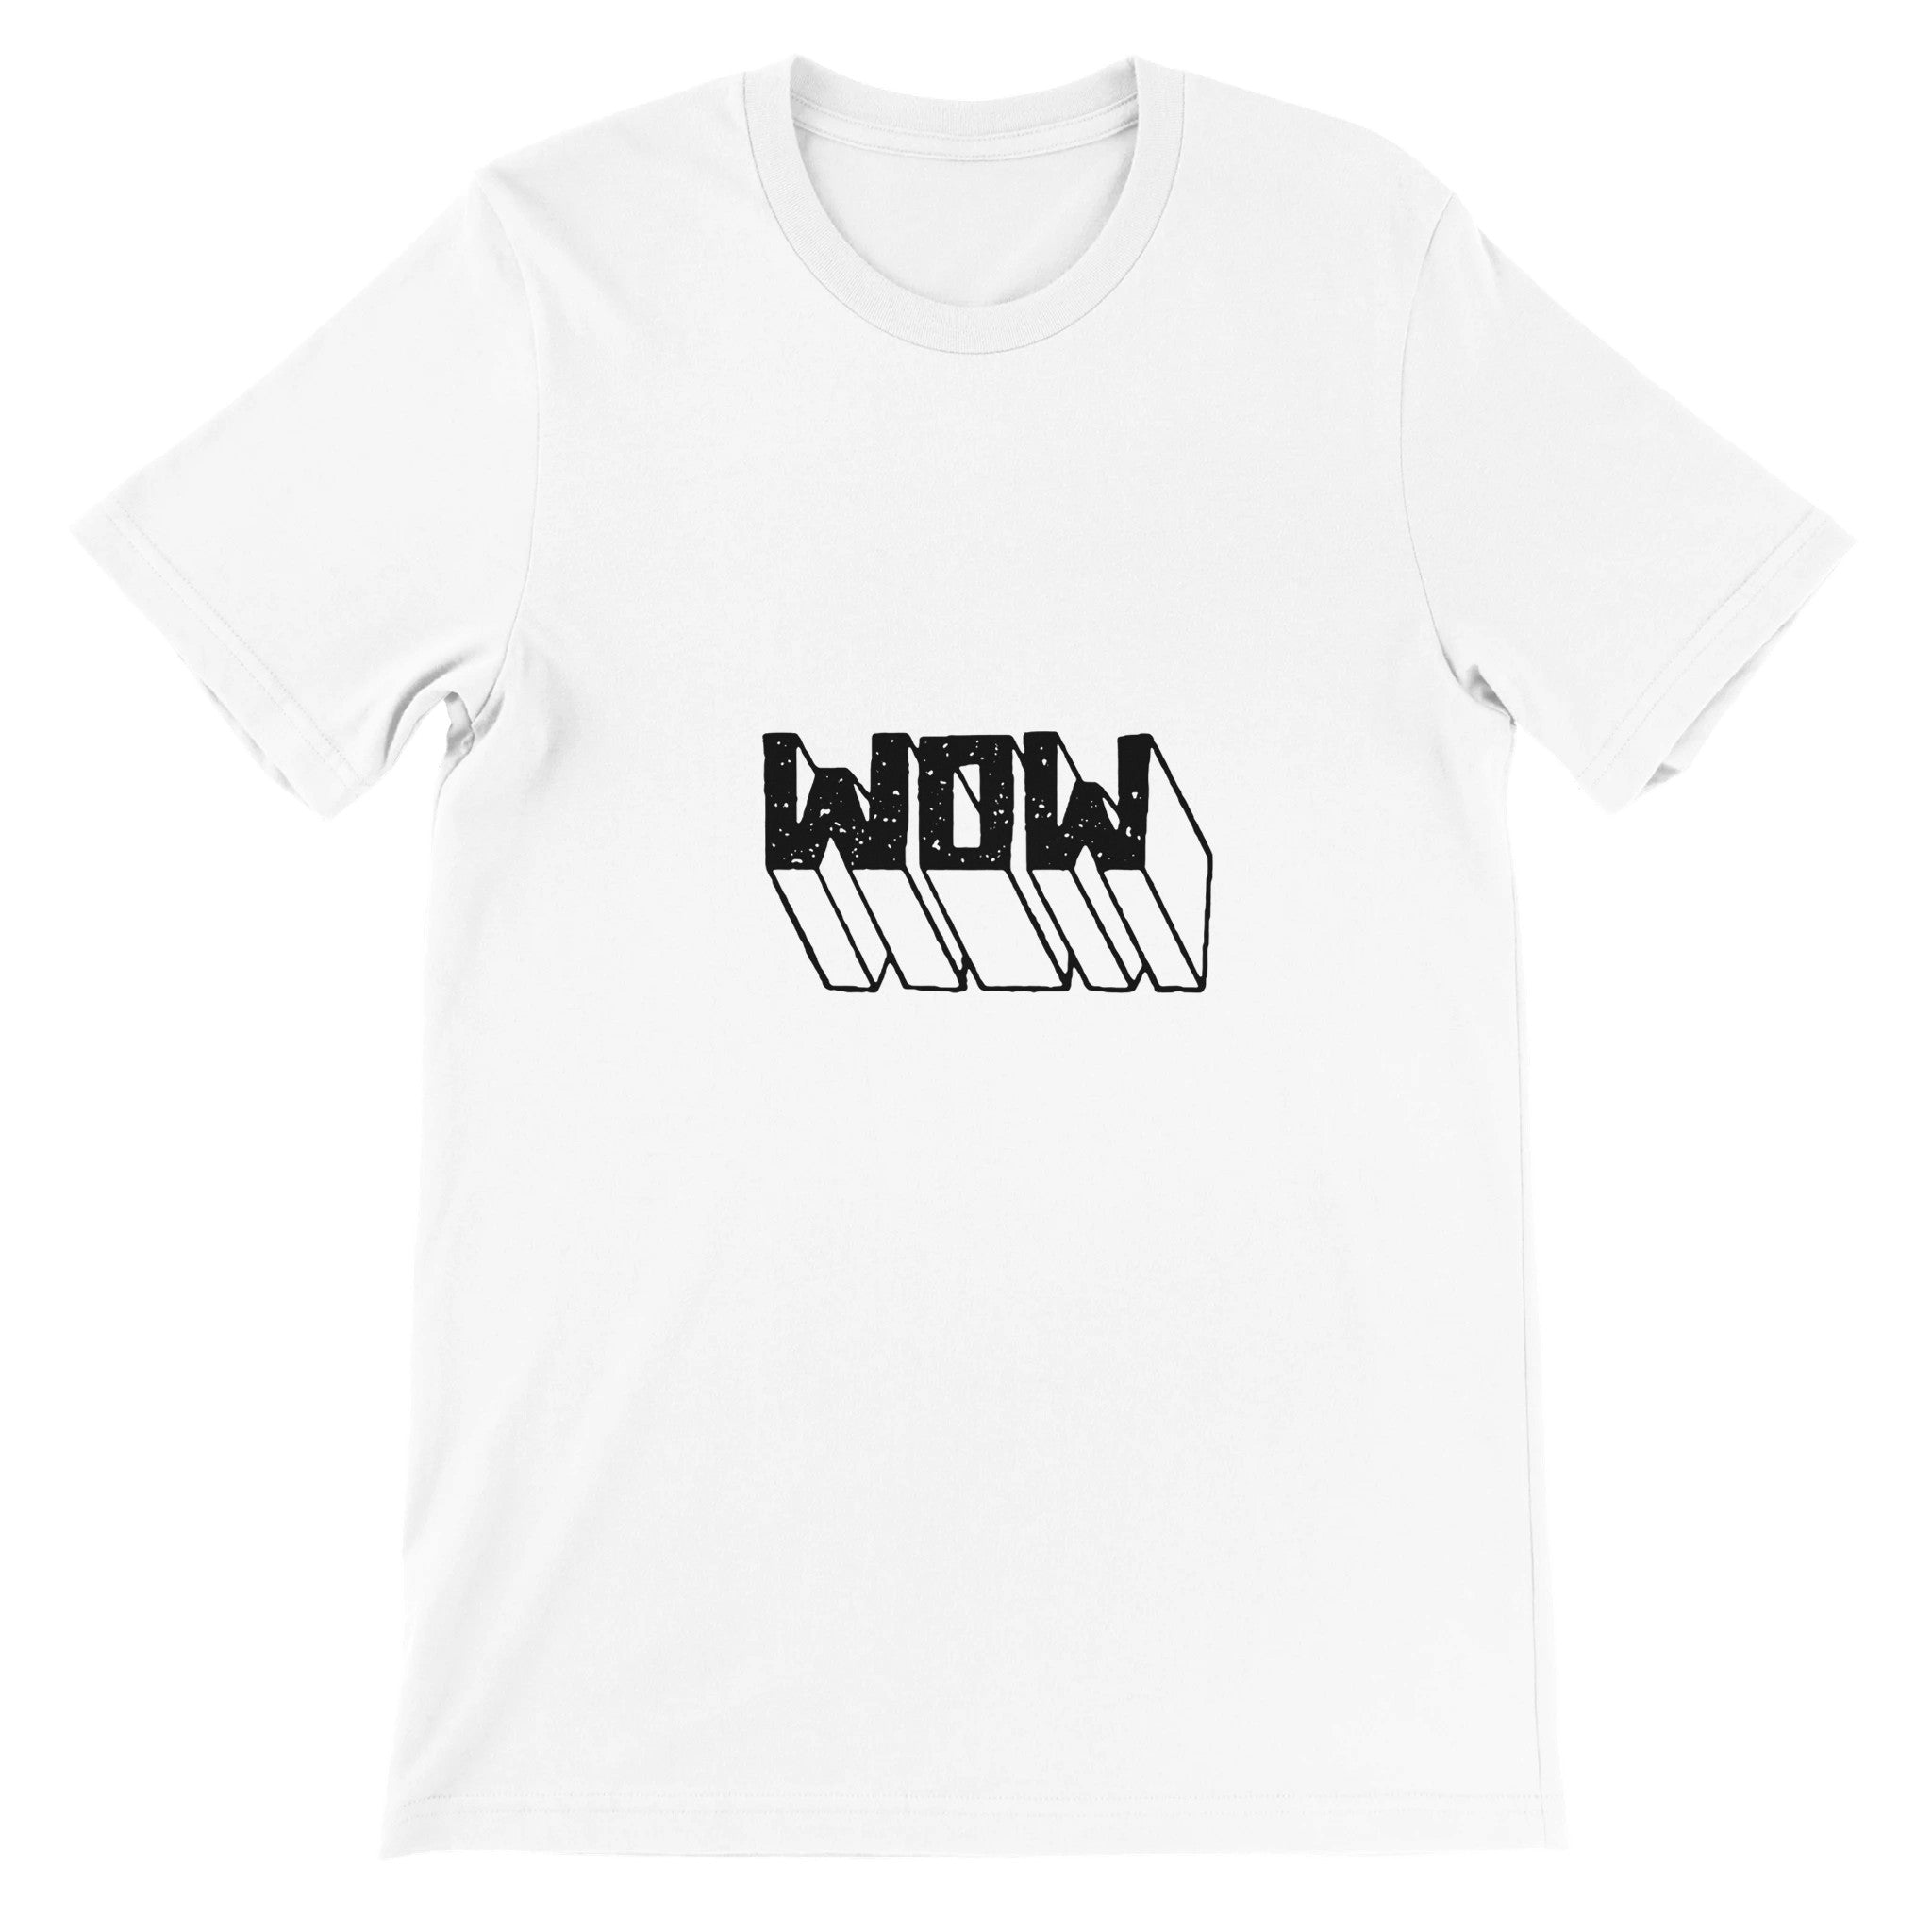 WOW Crewneck T-shirt - Optimalprint